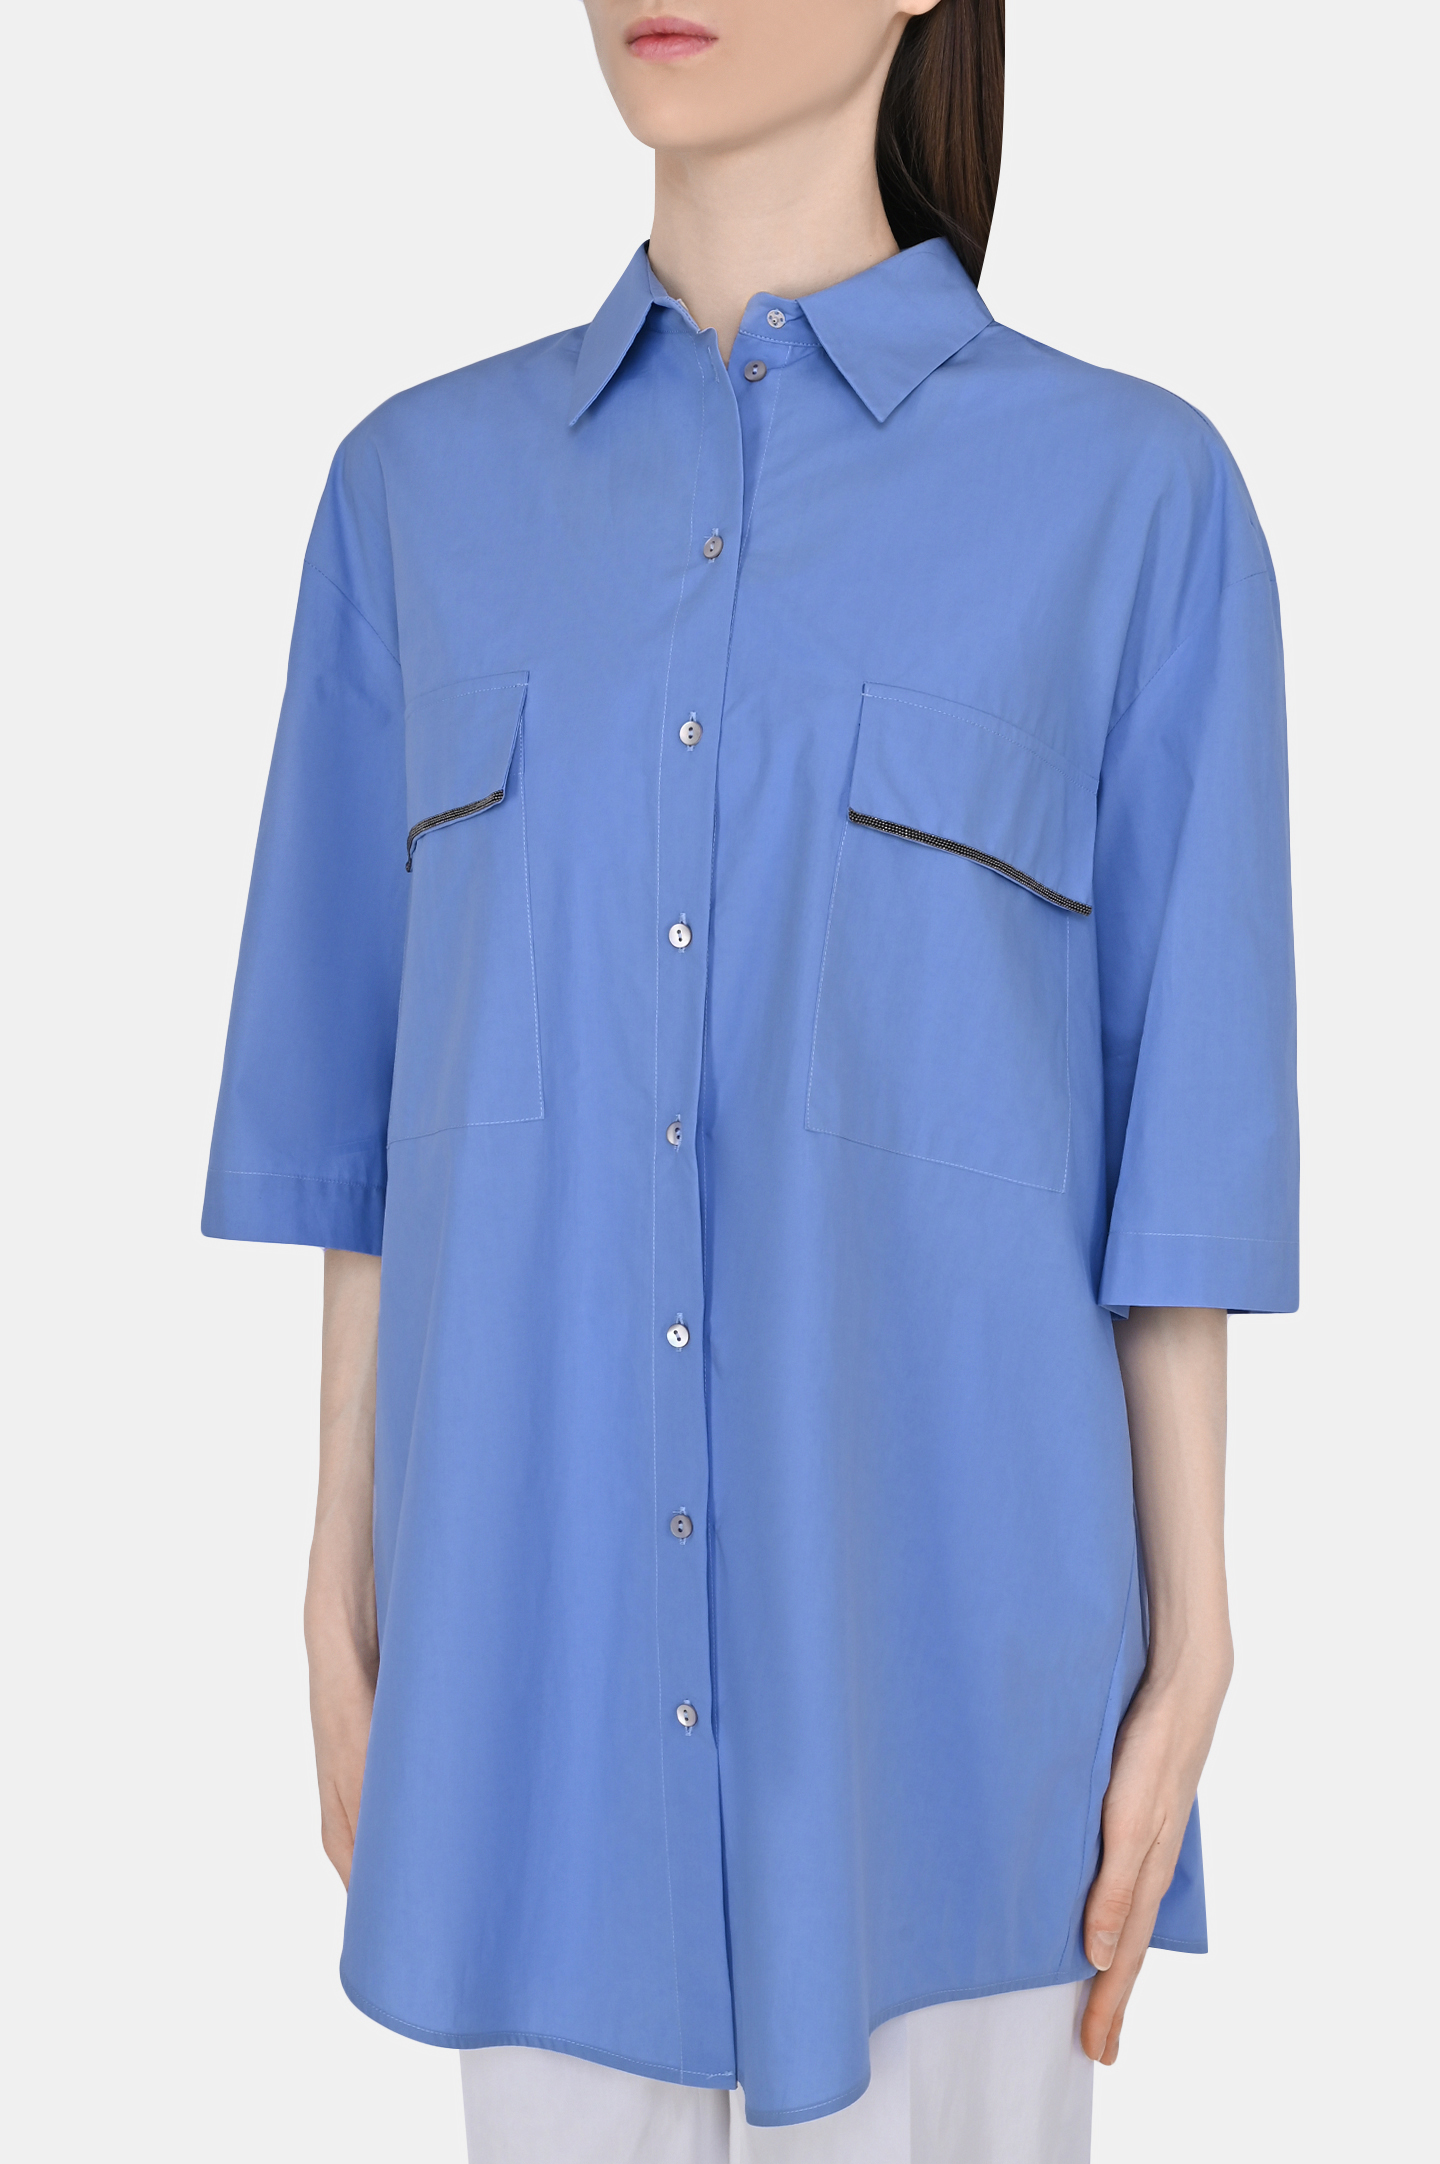 Рубашка FABIANA FILIPPI CAD273W359D252, цвет: Голубой, Женский